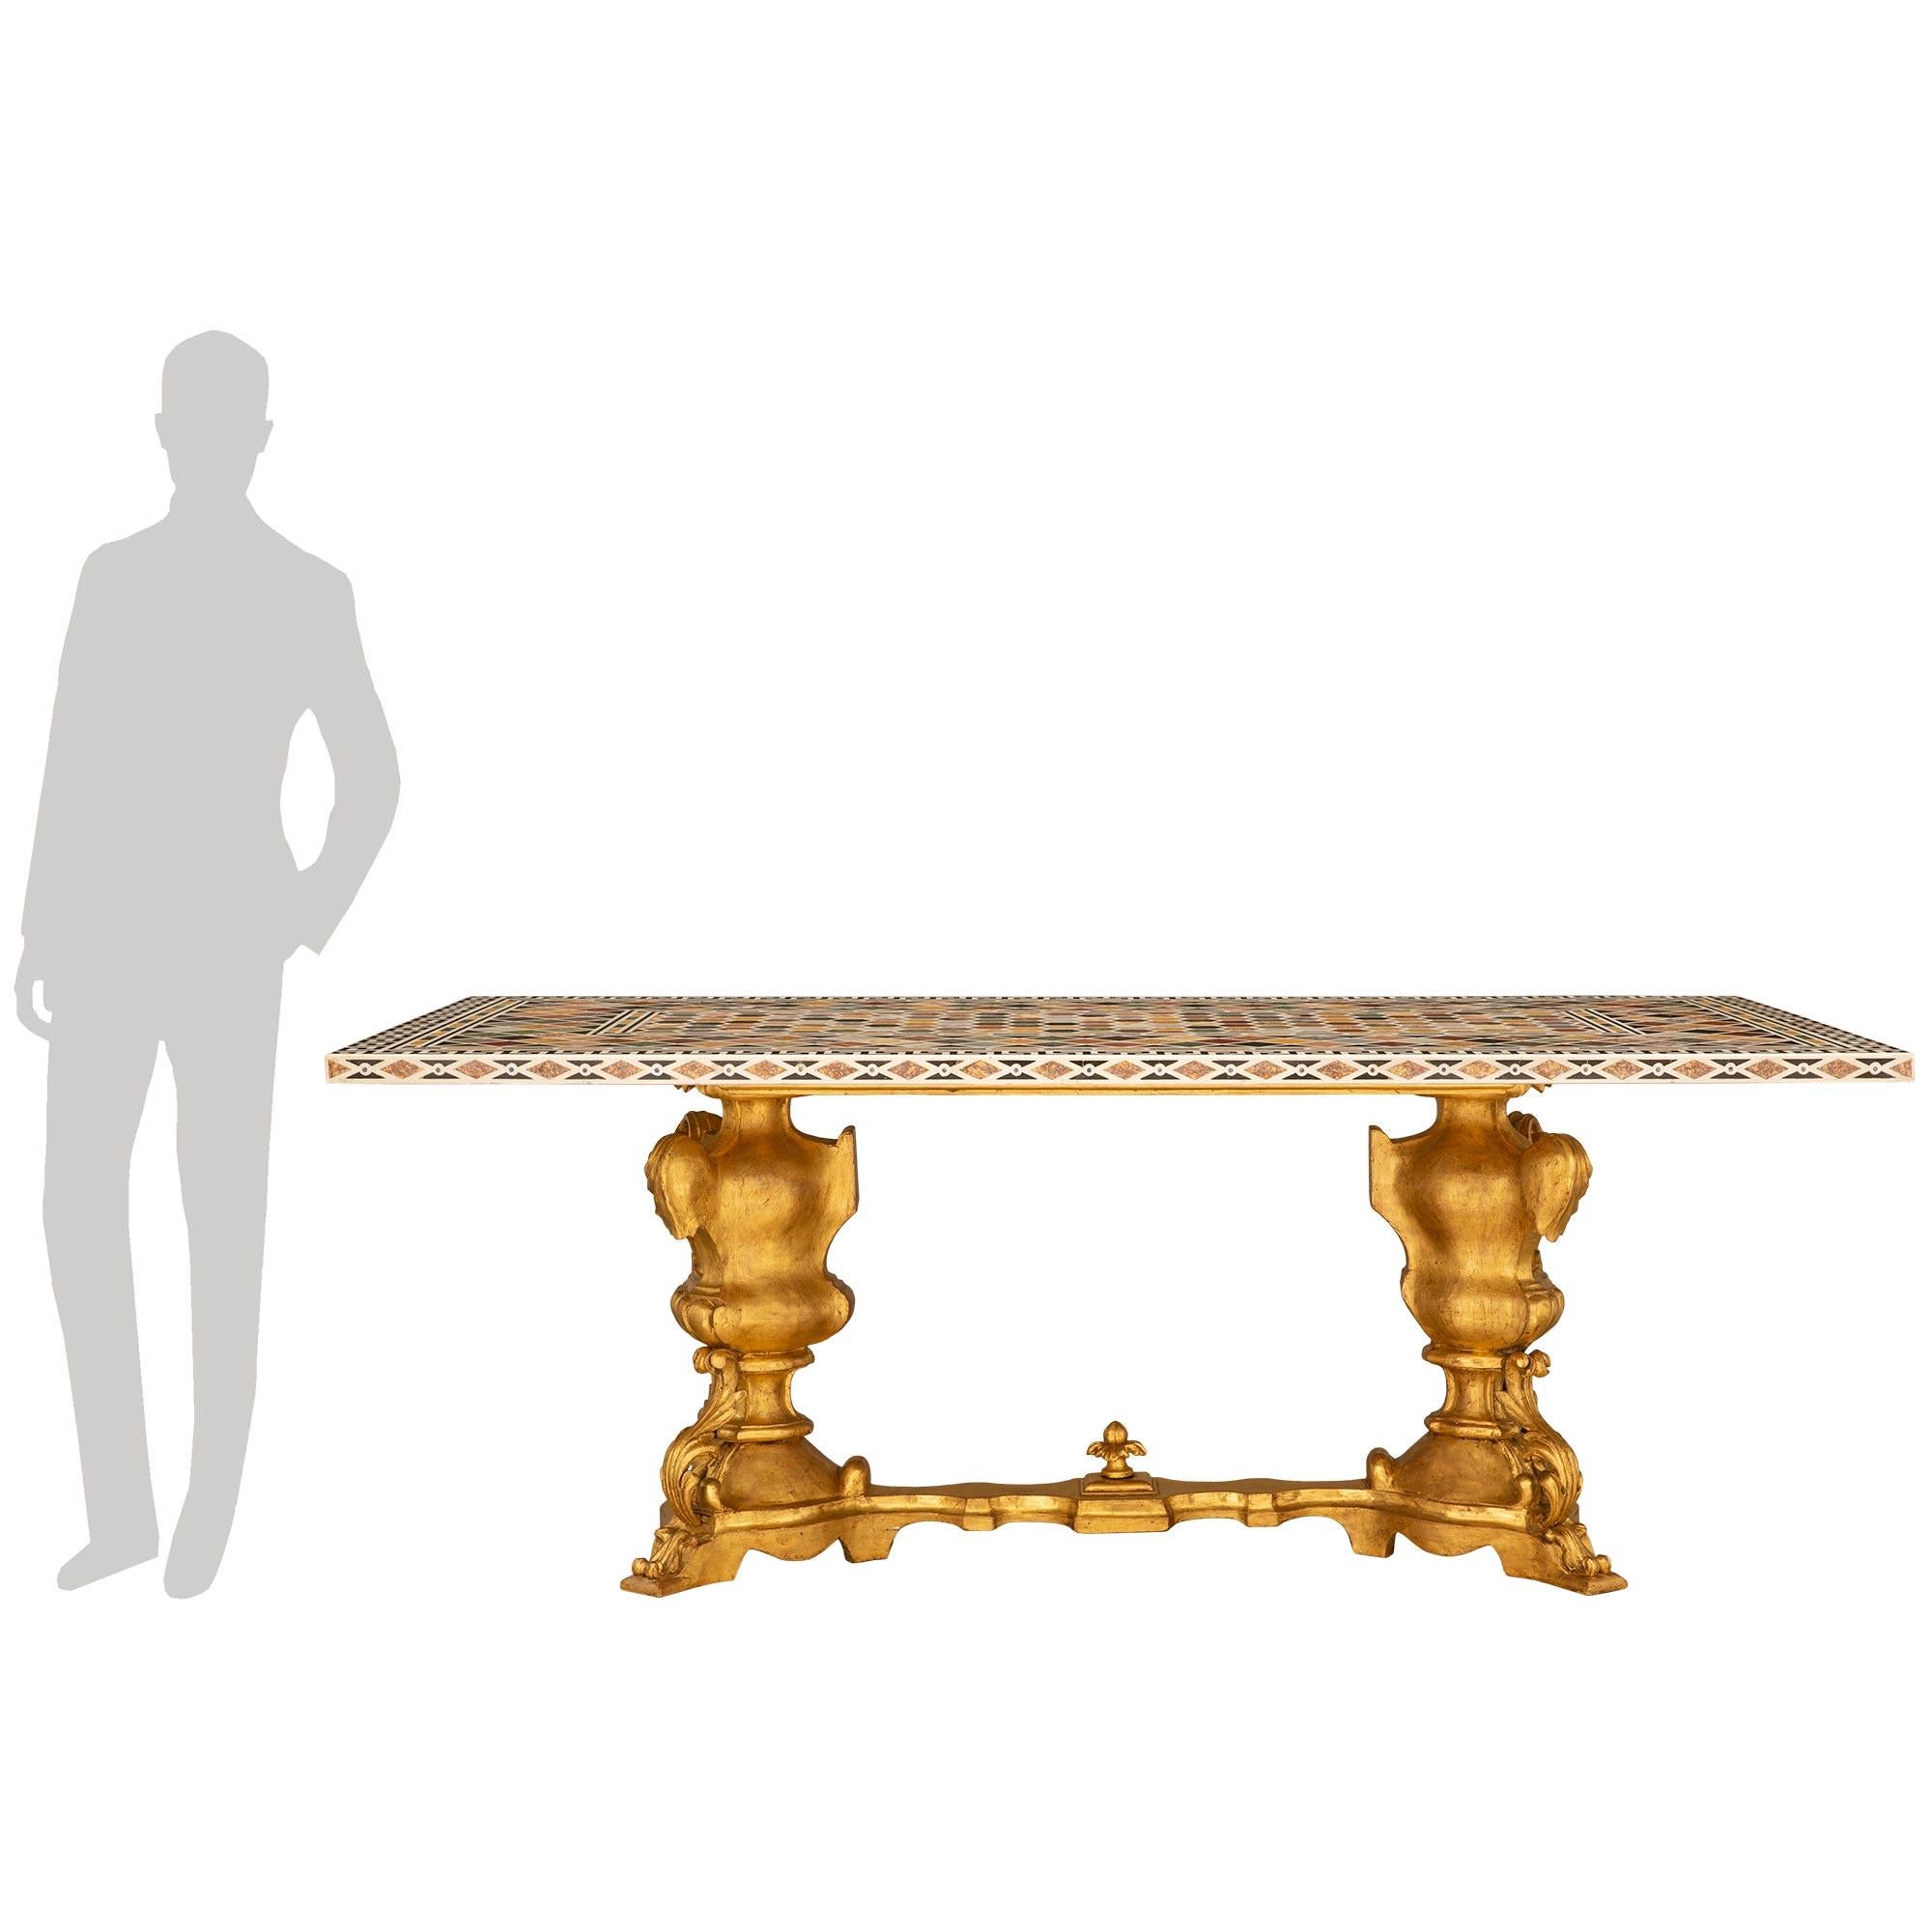 
Une table de salle à manger sensationnelle et extrêmement décorative en marbre et bois doré du XIXe siècle. La table repose sur une base baroque en bois doré avec deux supports en forme de balustre décorés de feuilles d'acanthe enroulées et de